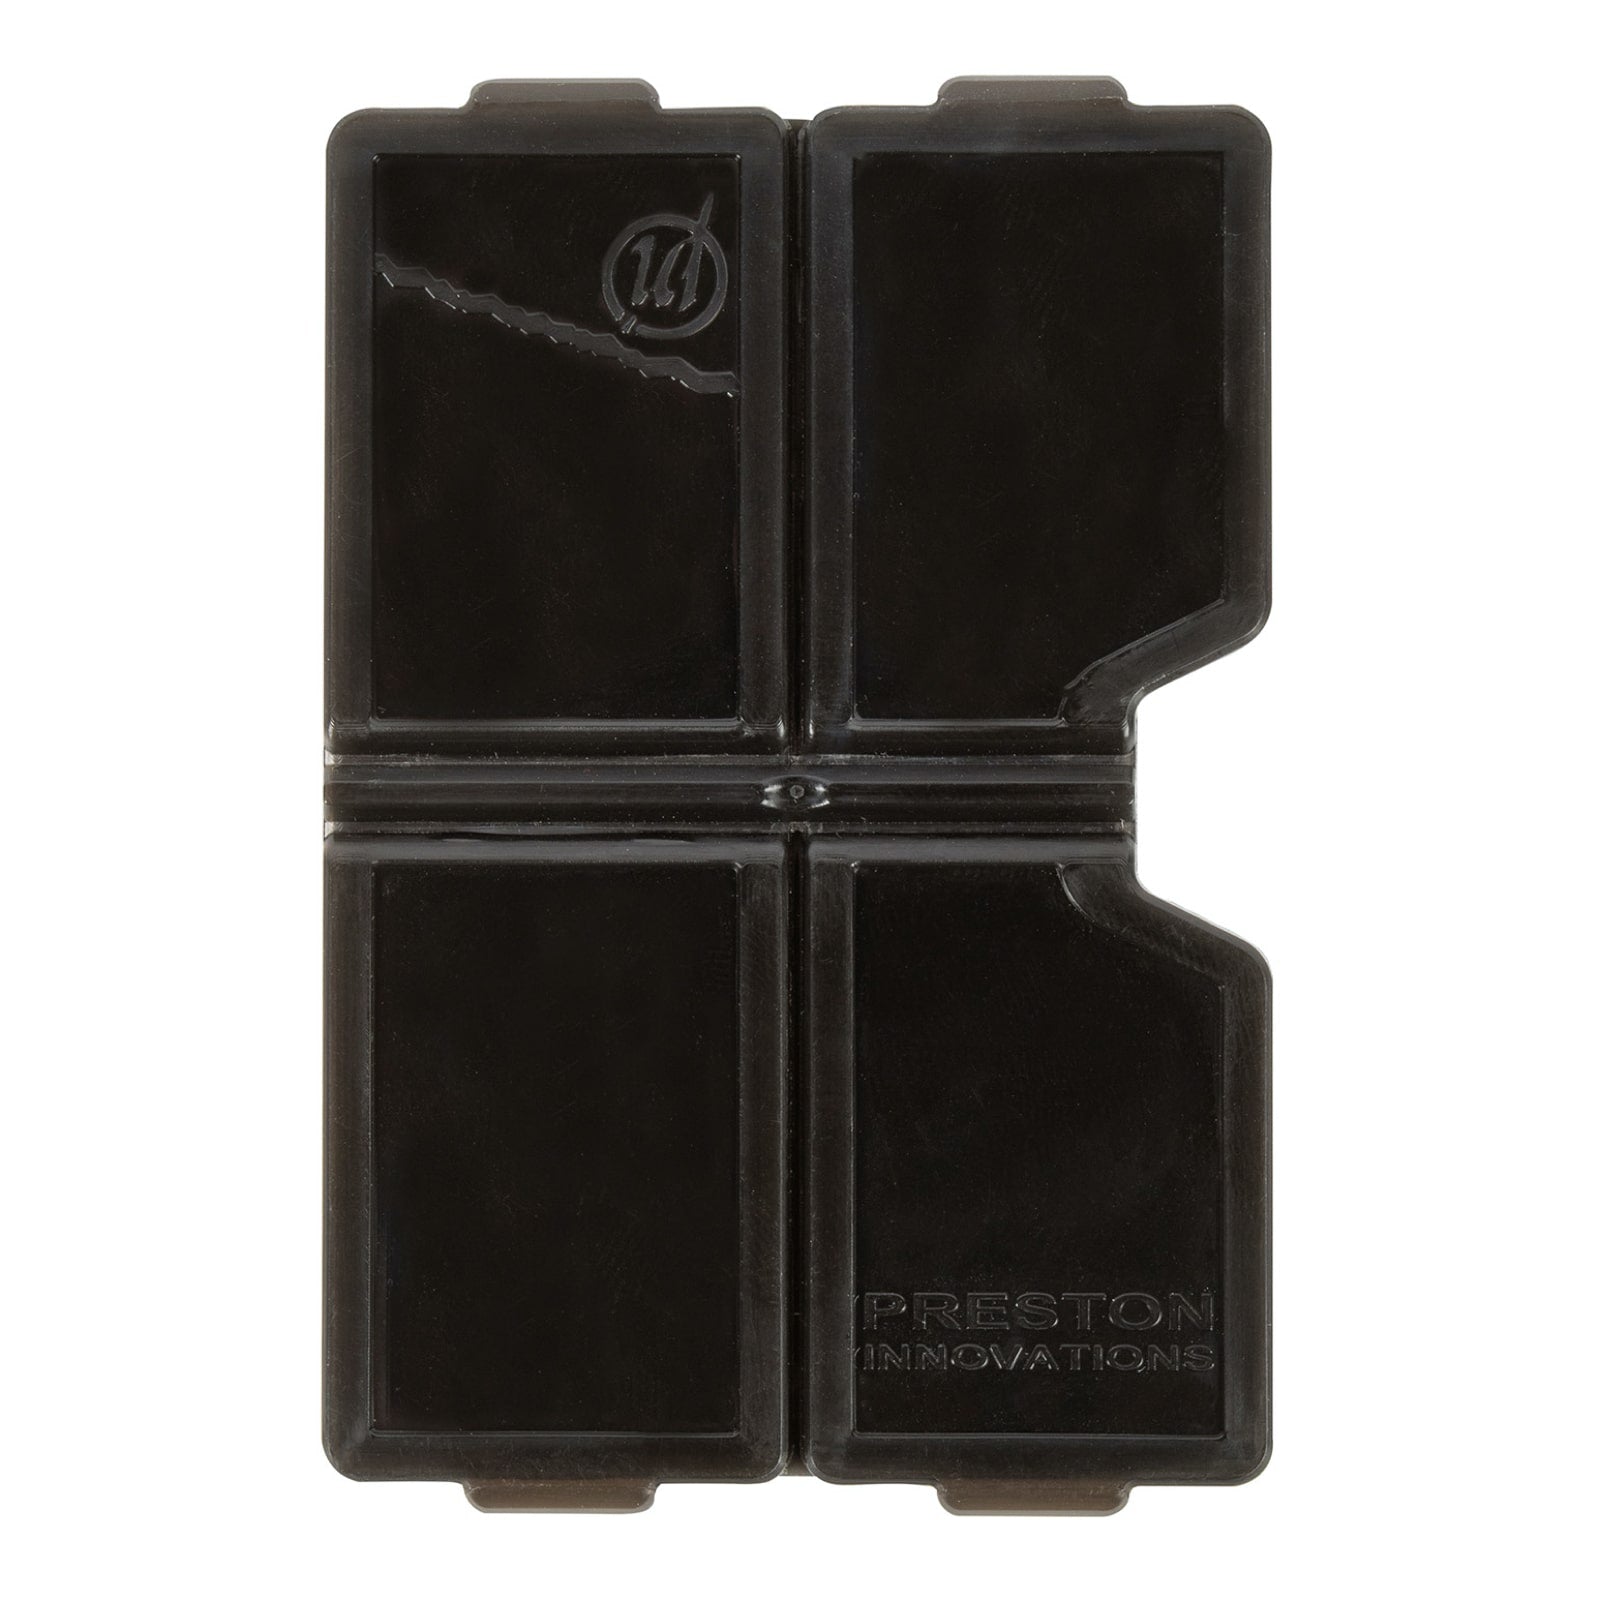 Preston accessory box 4 compartment shallow P0220127